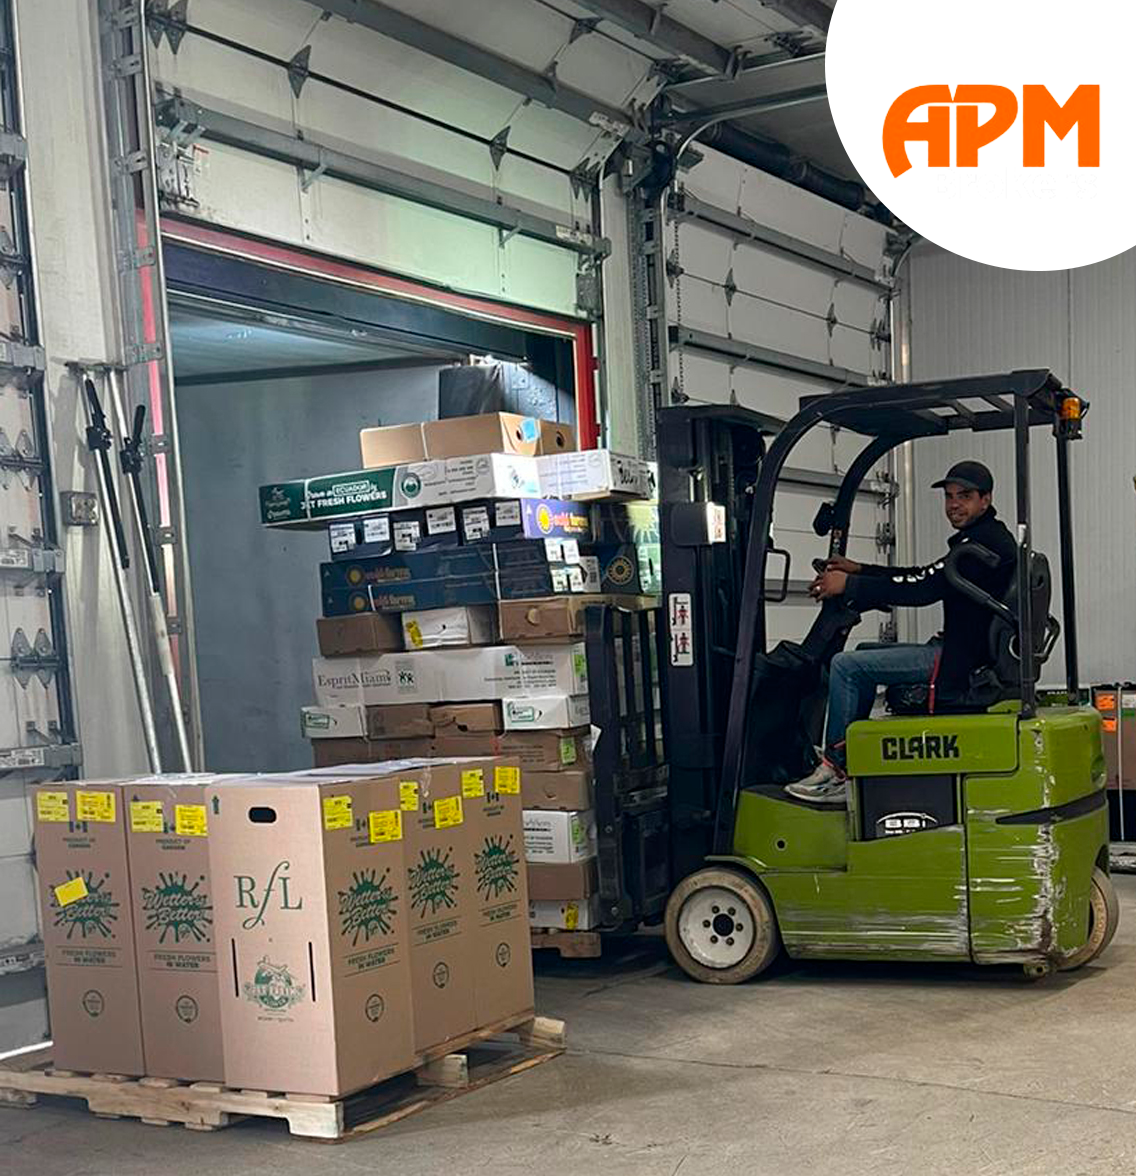 apm transportation company warehouse miami